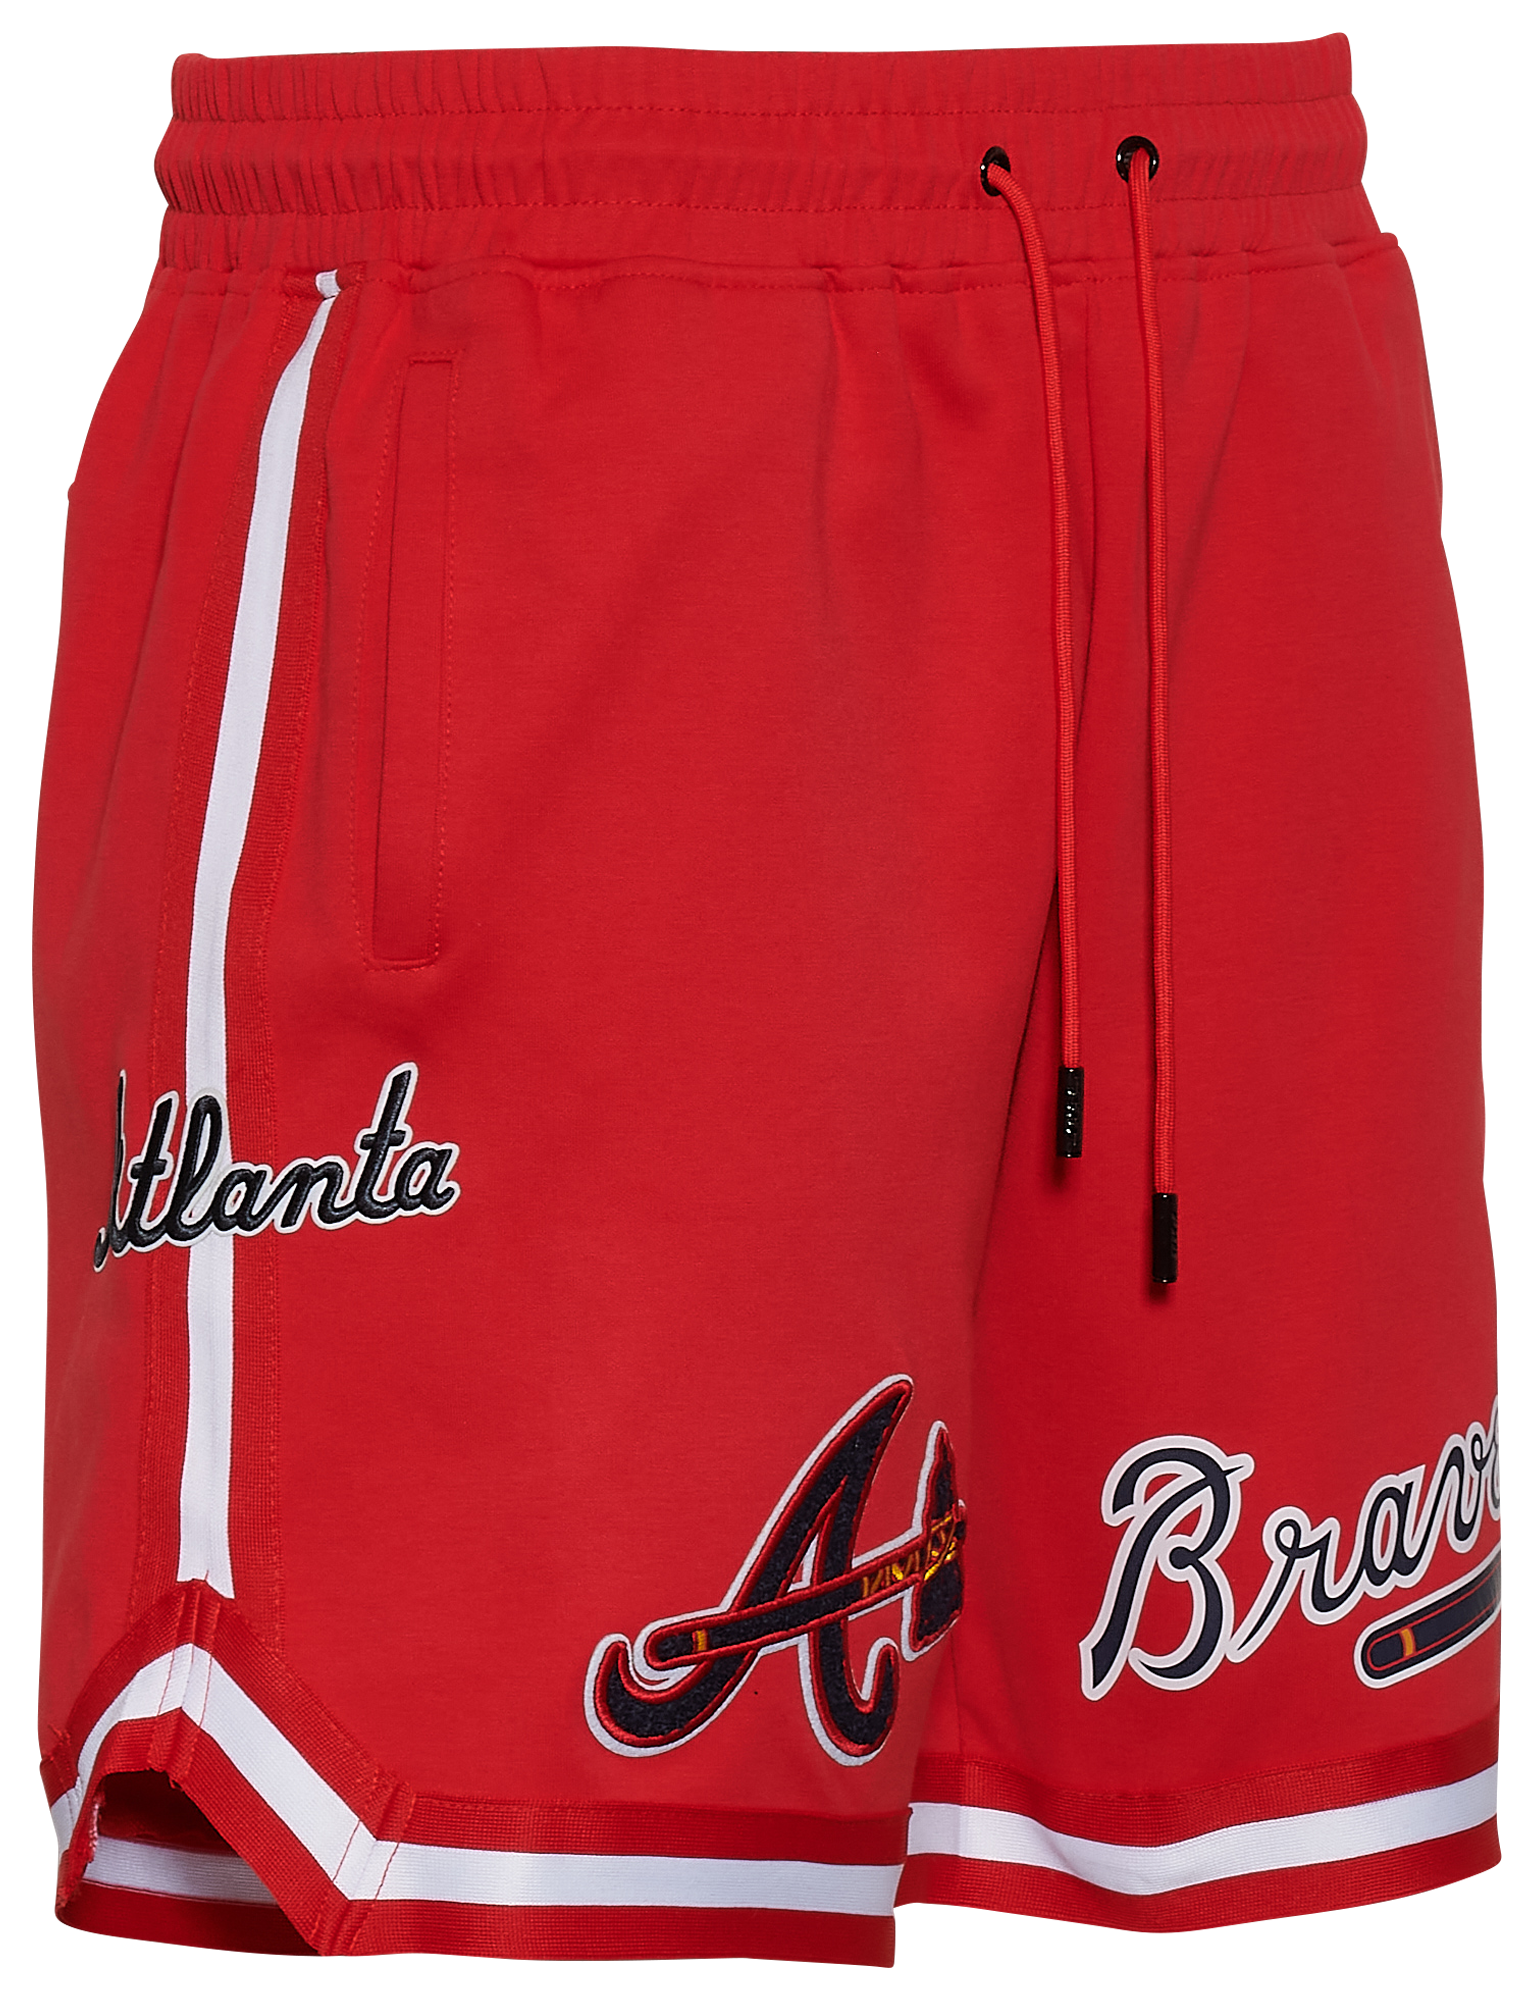 Men's Atlanta Braves Pro Standard Navy Team Shorts